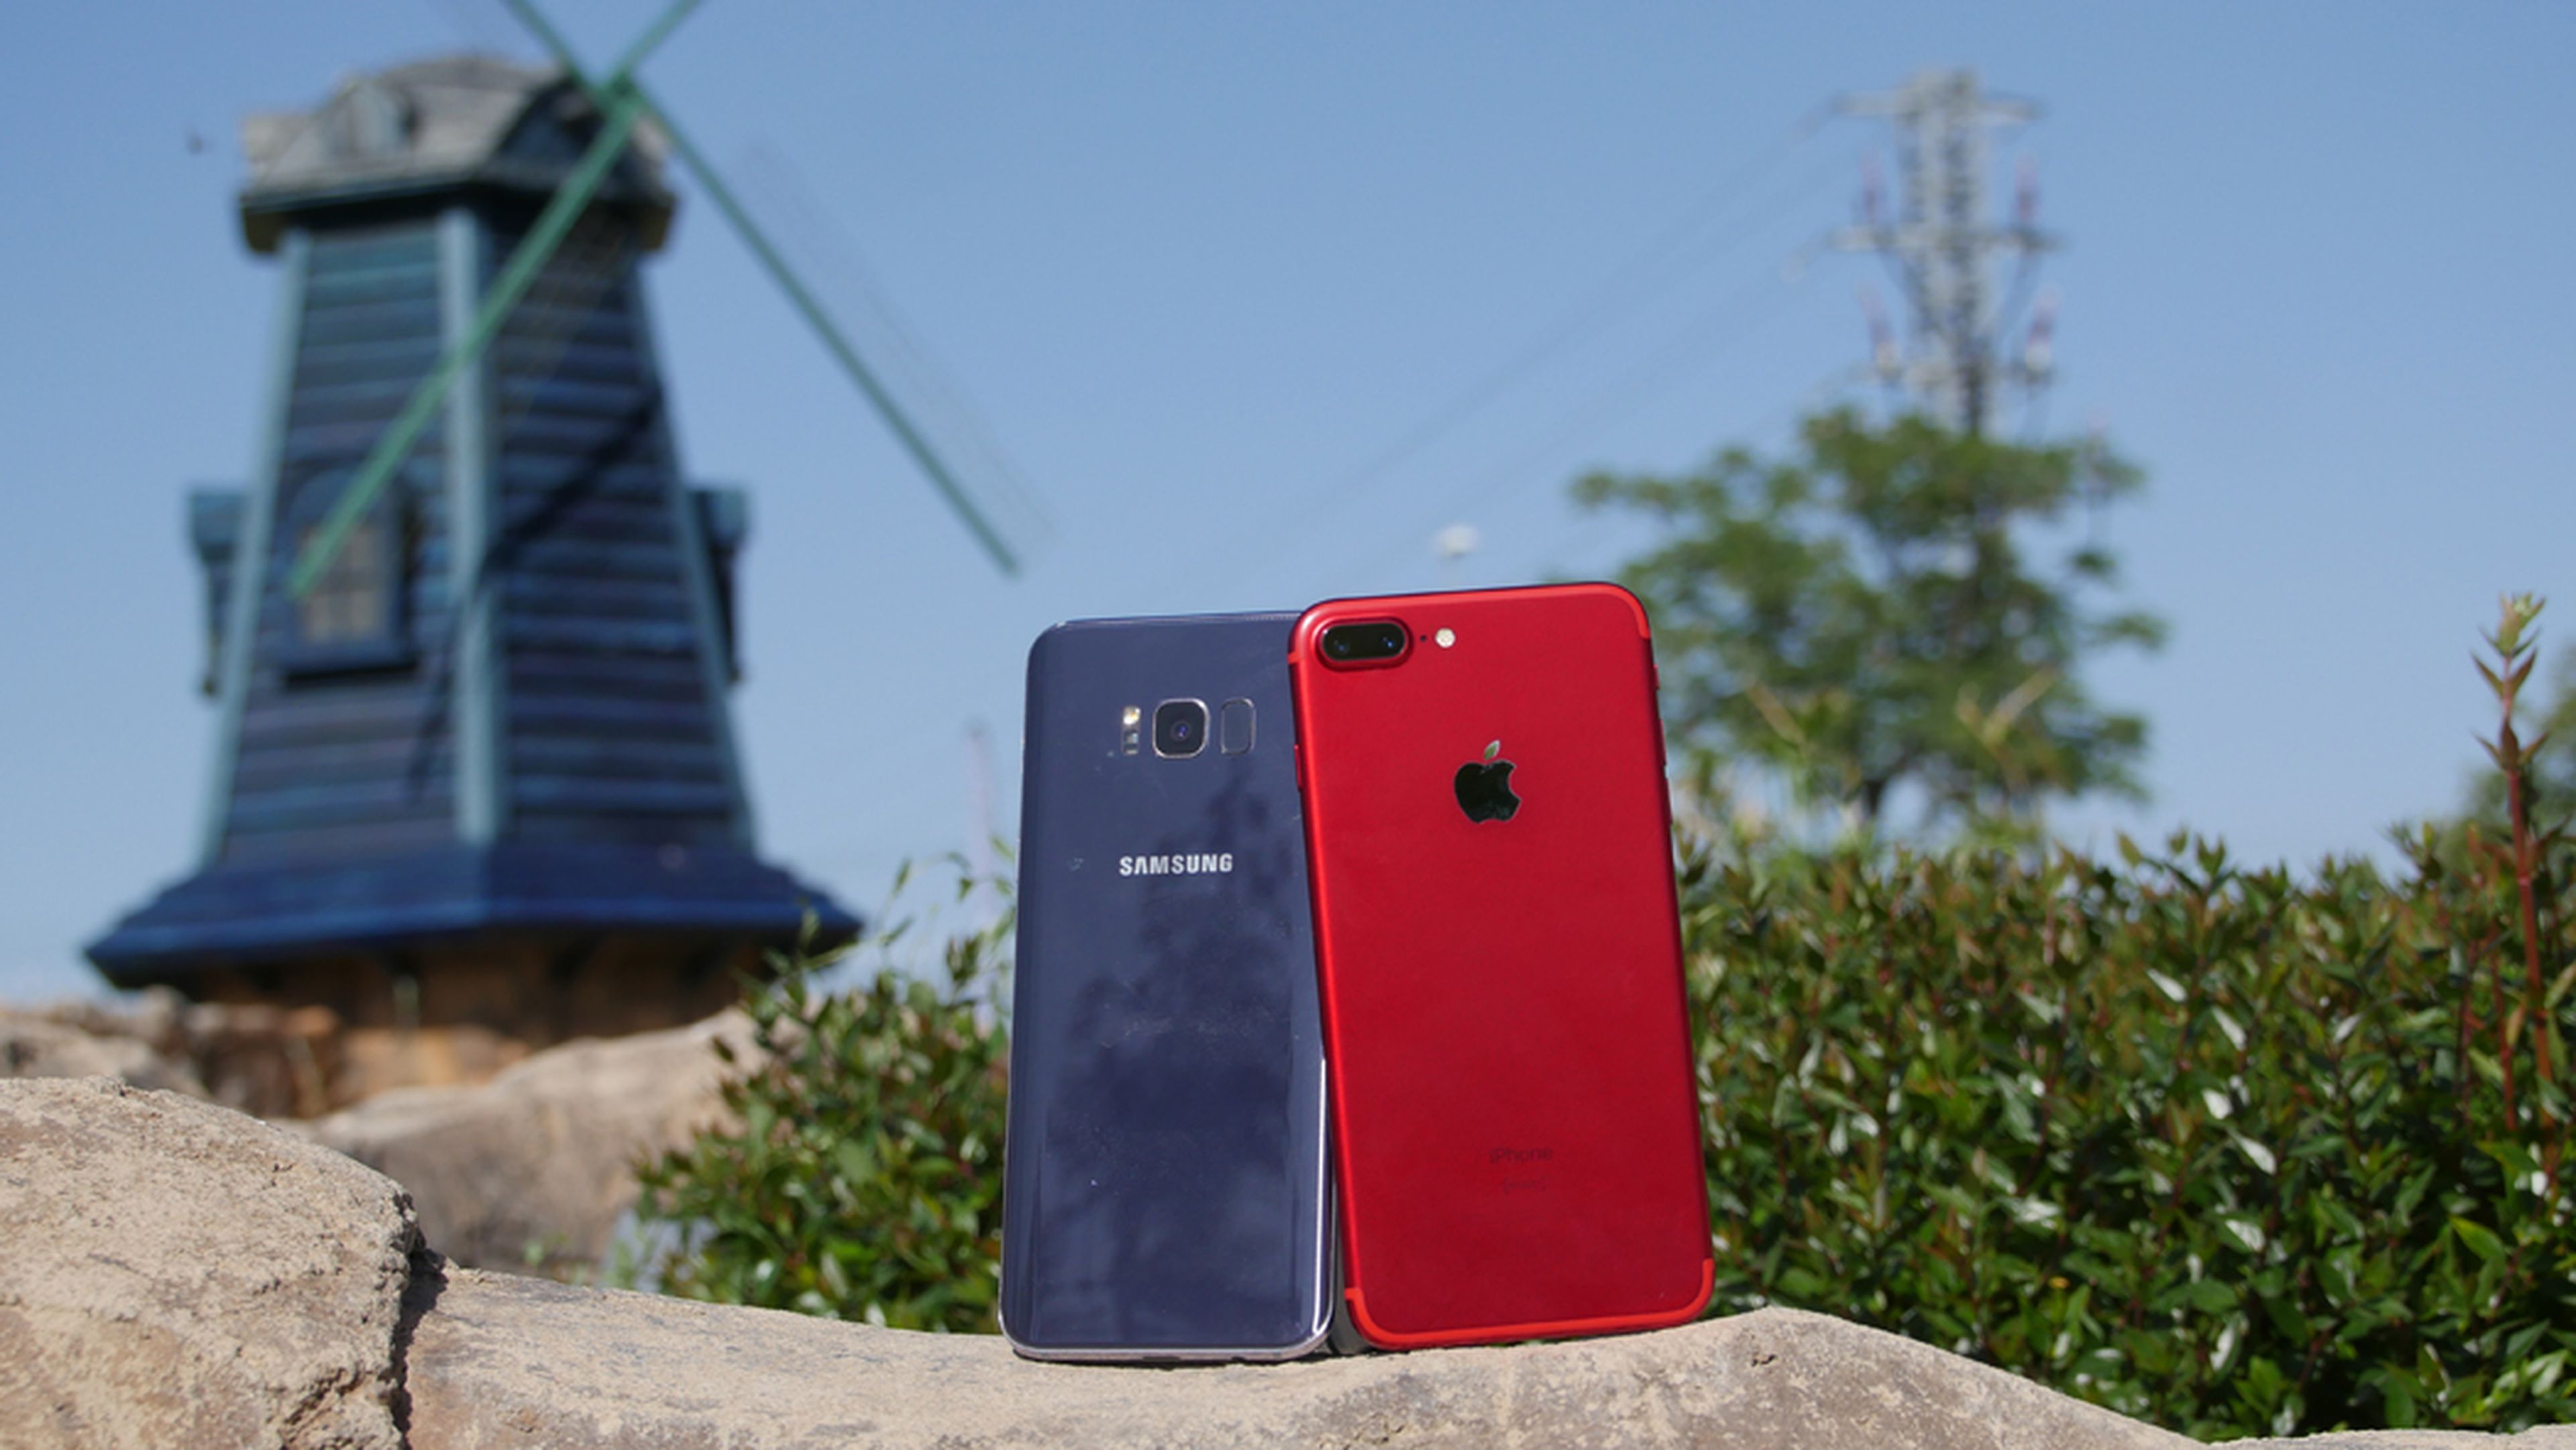 Comparamos el Samsung Galaxy S8+ con el iPhone 7 Plus